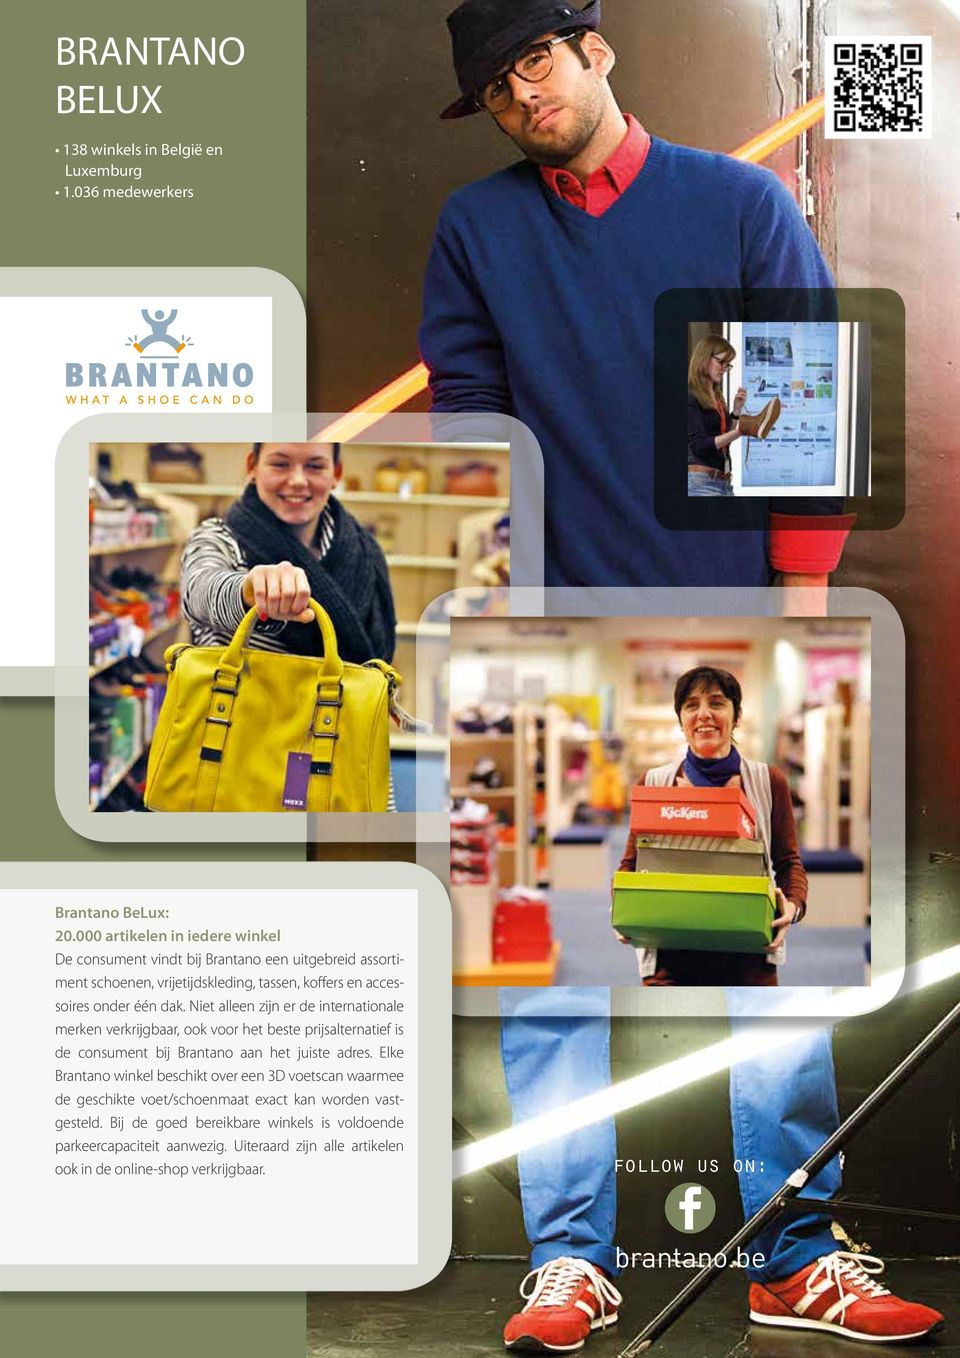 Niet alleen zijn er de internationale merken verkrijgbaar, ook voor het beste prijsalternatief is de consument bij Brantano aan het juiste adres.